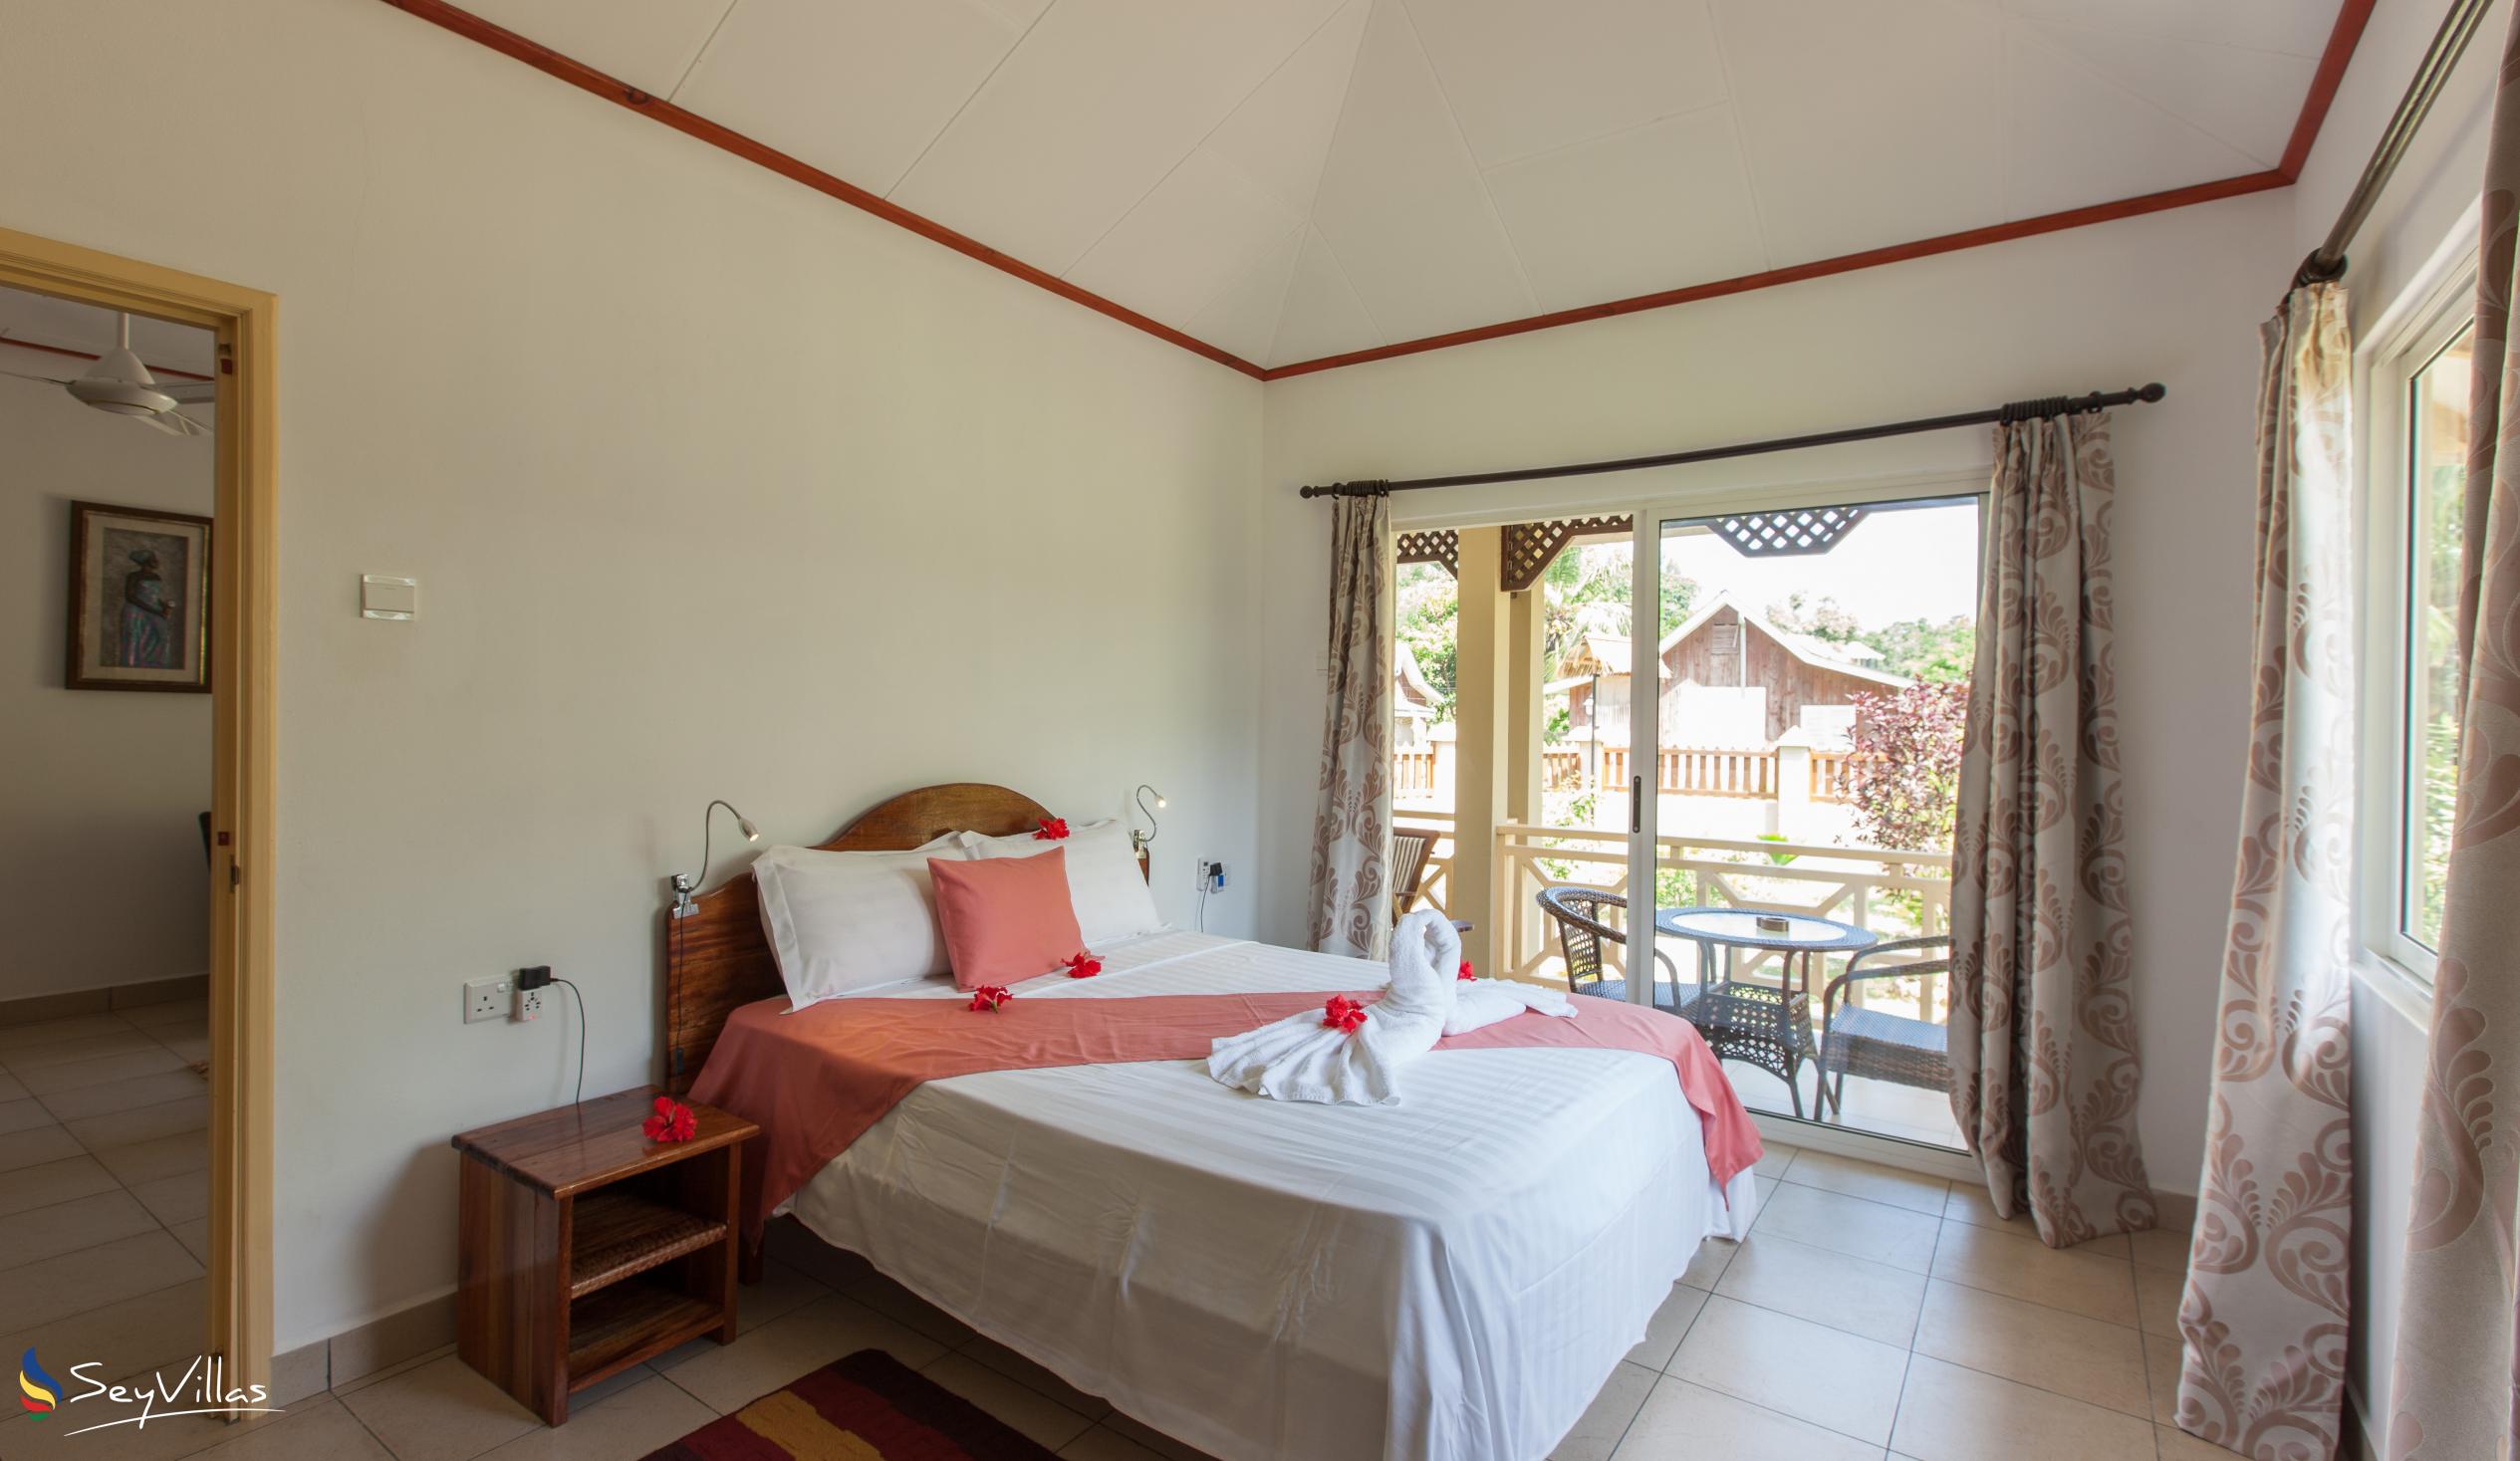 Foto 49: Hostellerie La Digue - Chalet 2 chambres - La Digue (Seychelles)